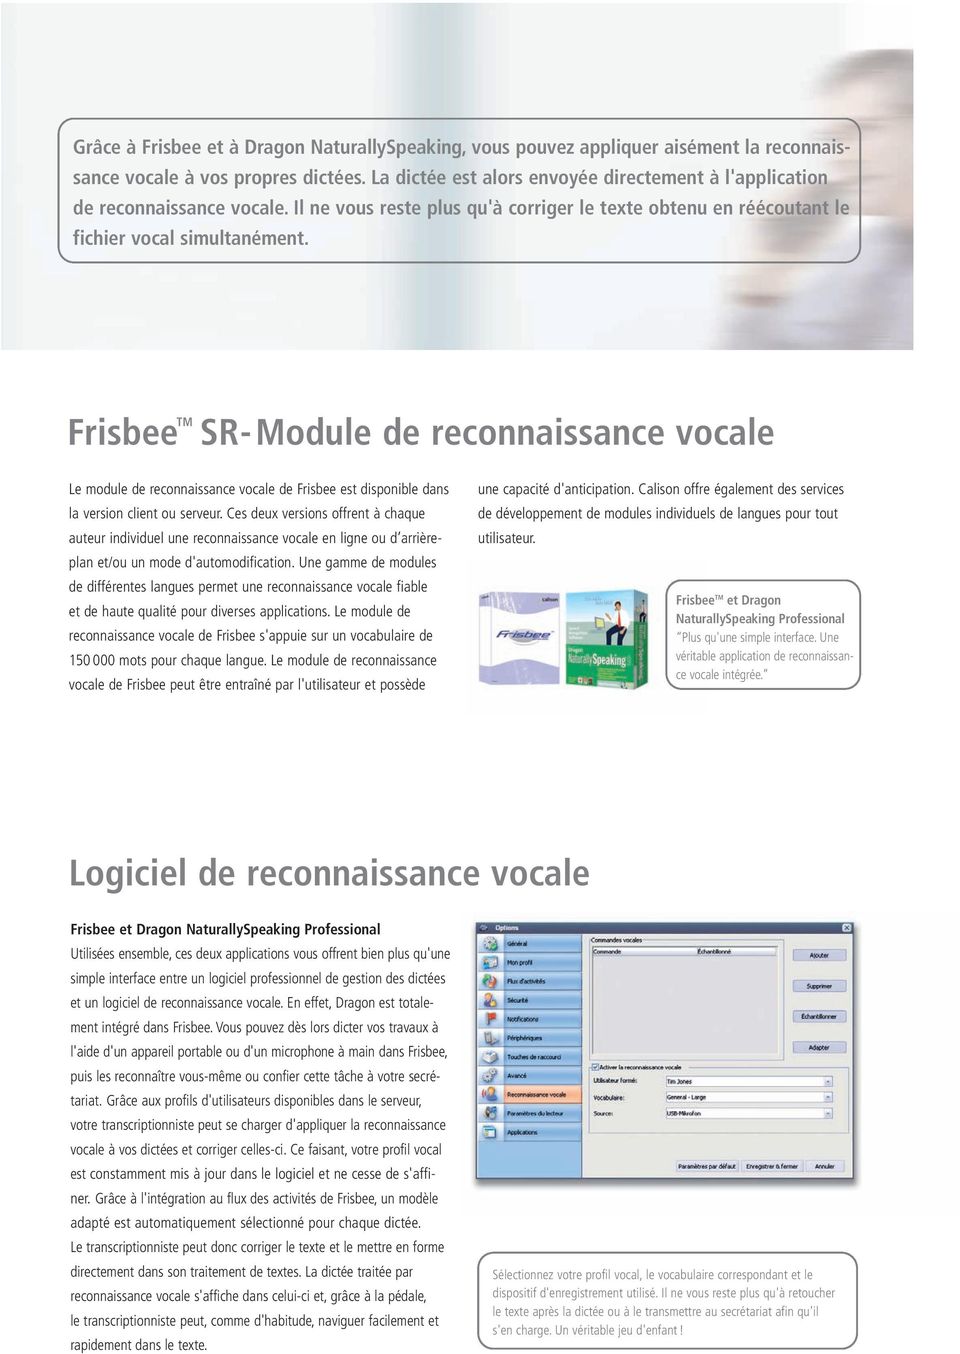 Frisbee TM SR-Module de reconnaissance vocale Le module de reconnaissance vocale de Frisbee est disponible dans la version client ou serveur.